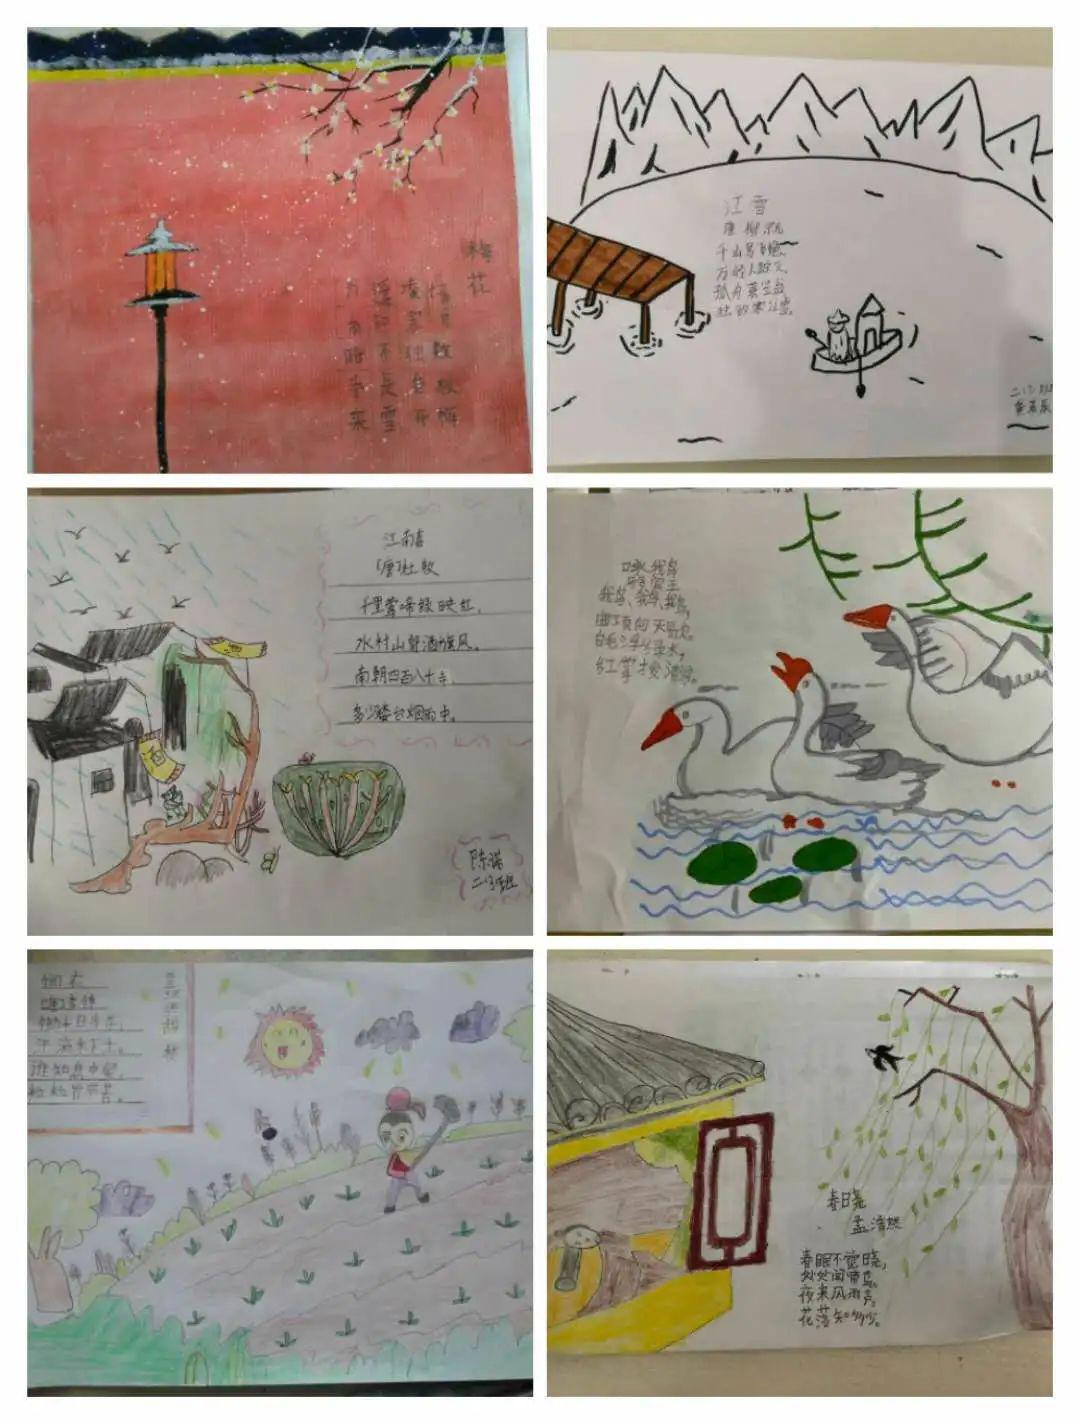 【中小学】诗情画意,精彩妙绘||记二年级组诗配画活动